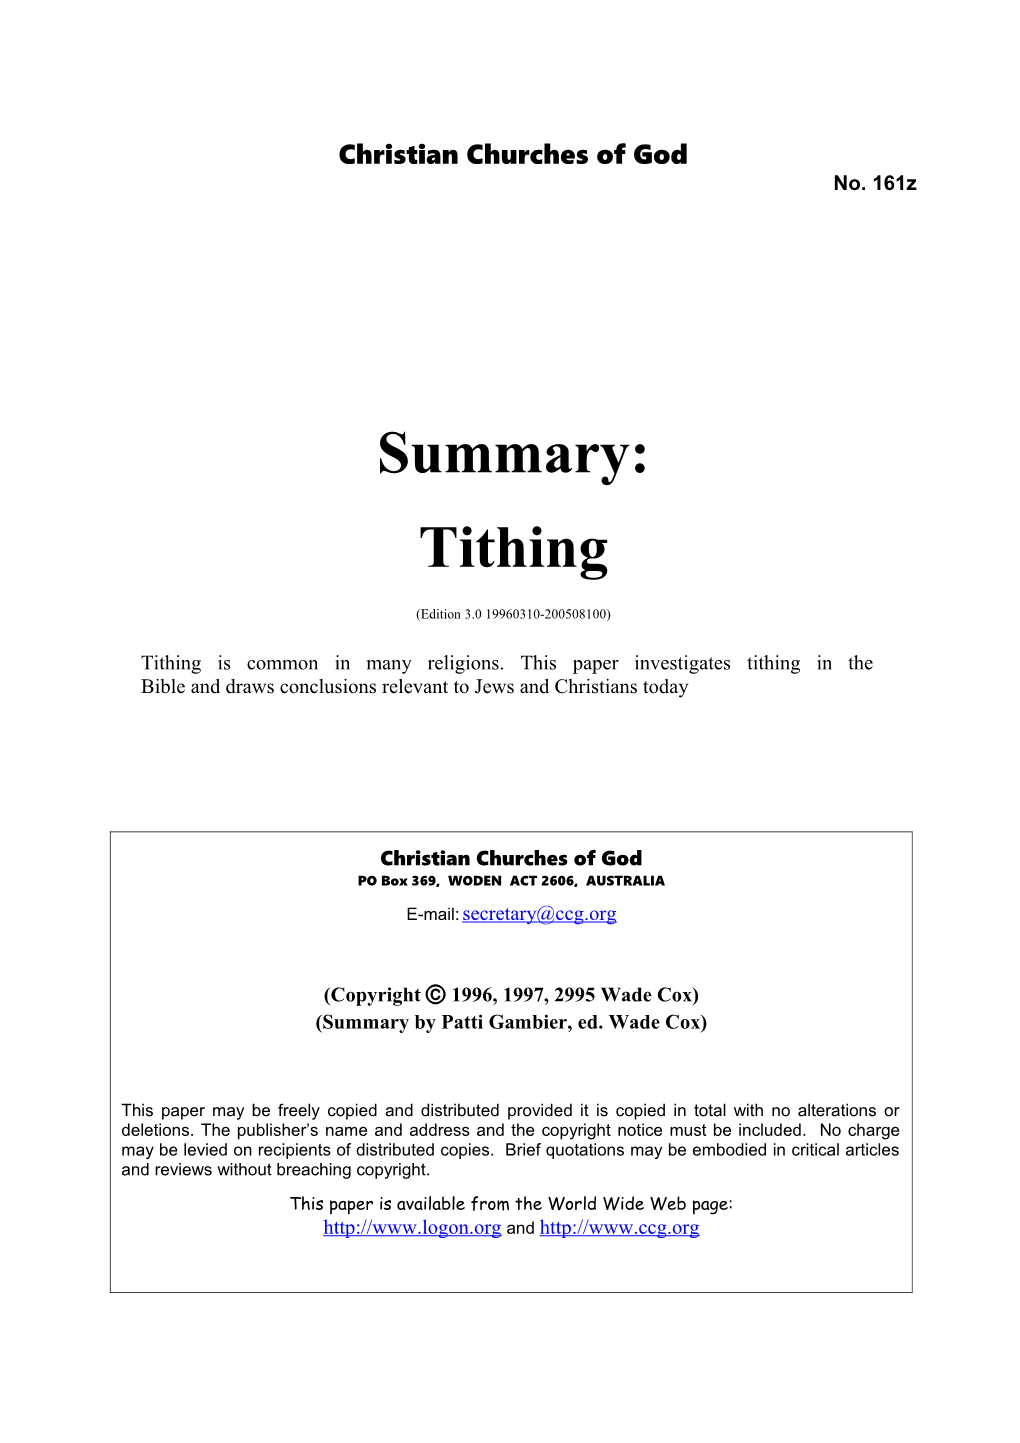 Summary: Tithing (No. 161Z)